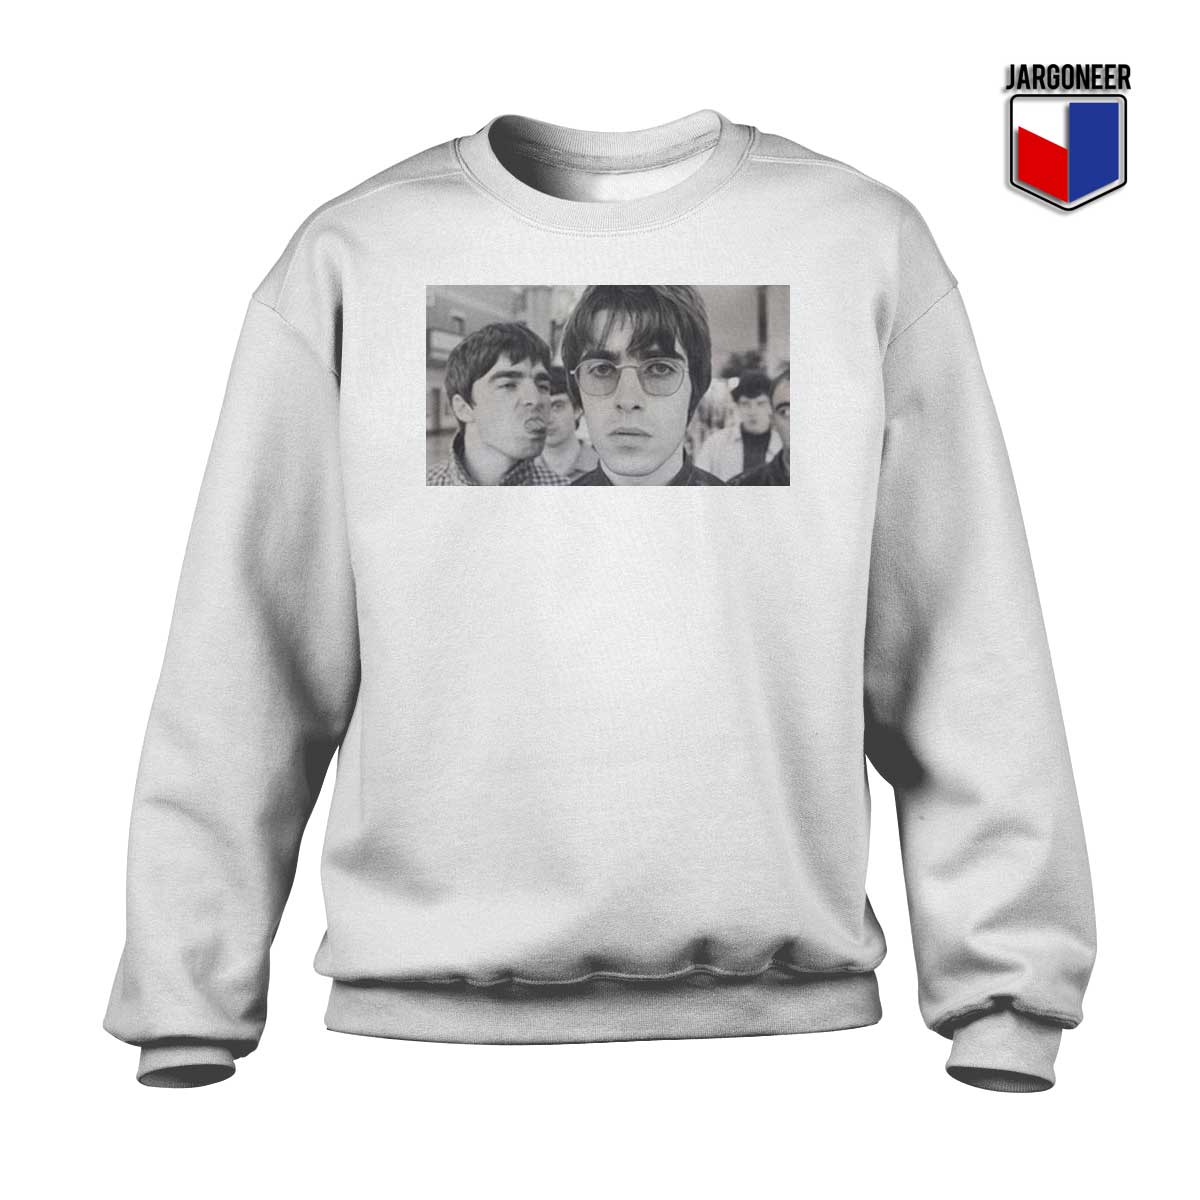 Oasis Band Sweatshirt - Shop Unique Graphic Cool Shirt Designs